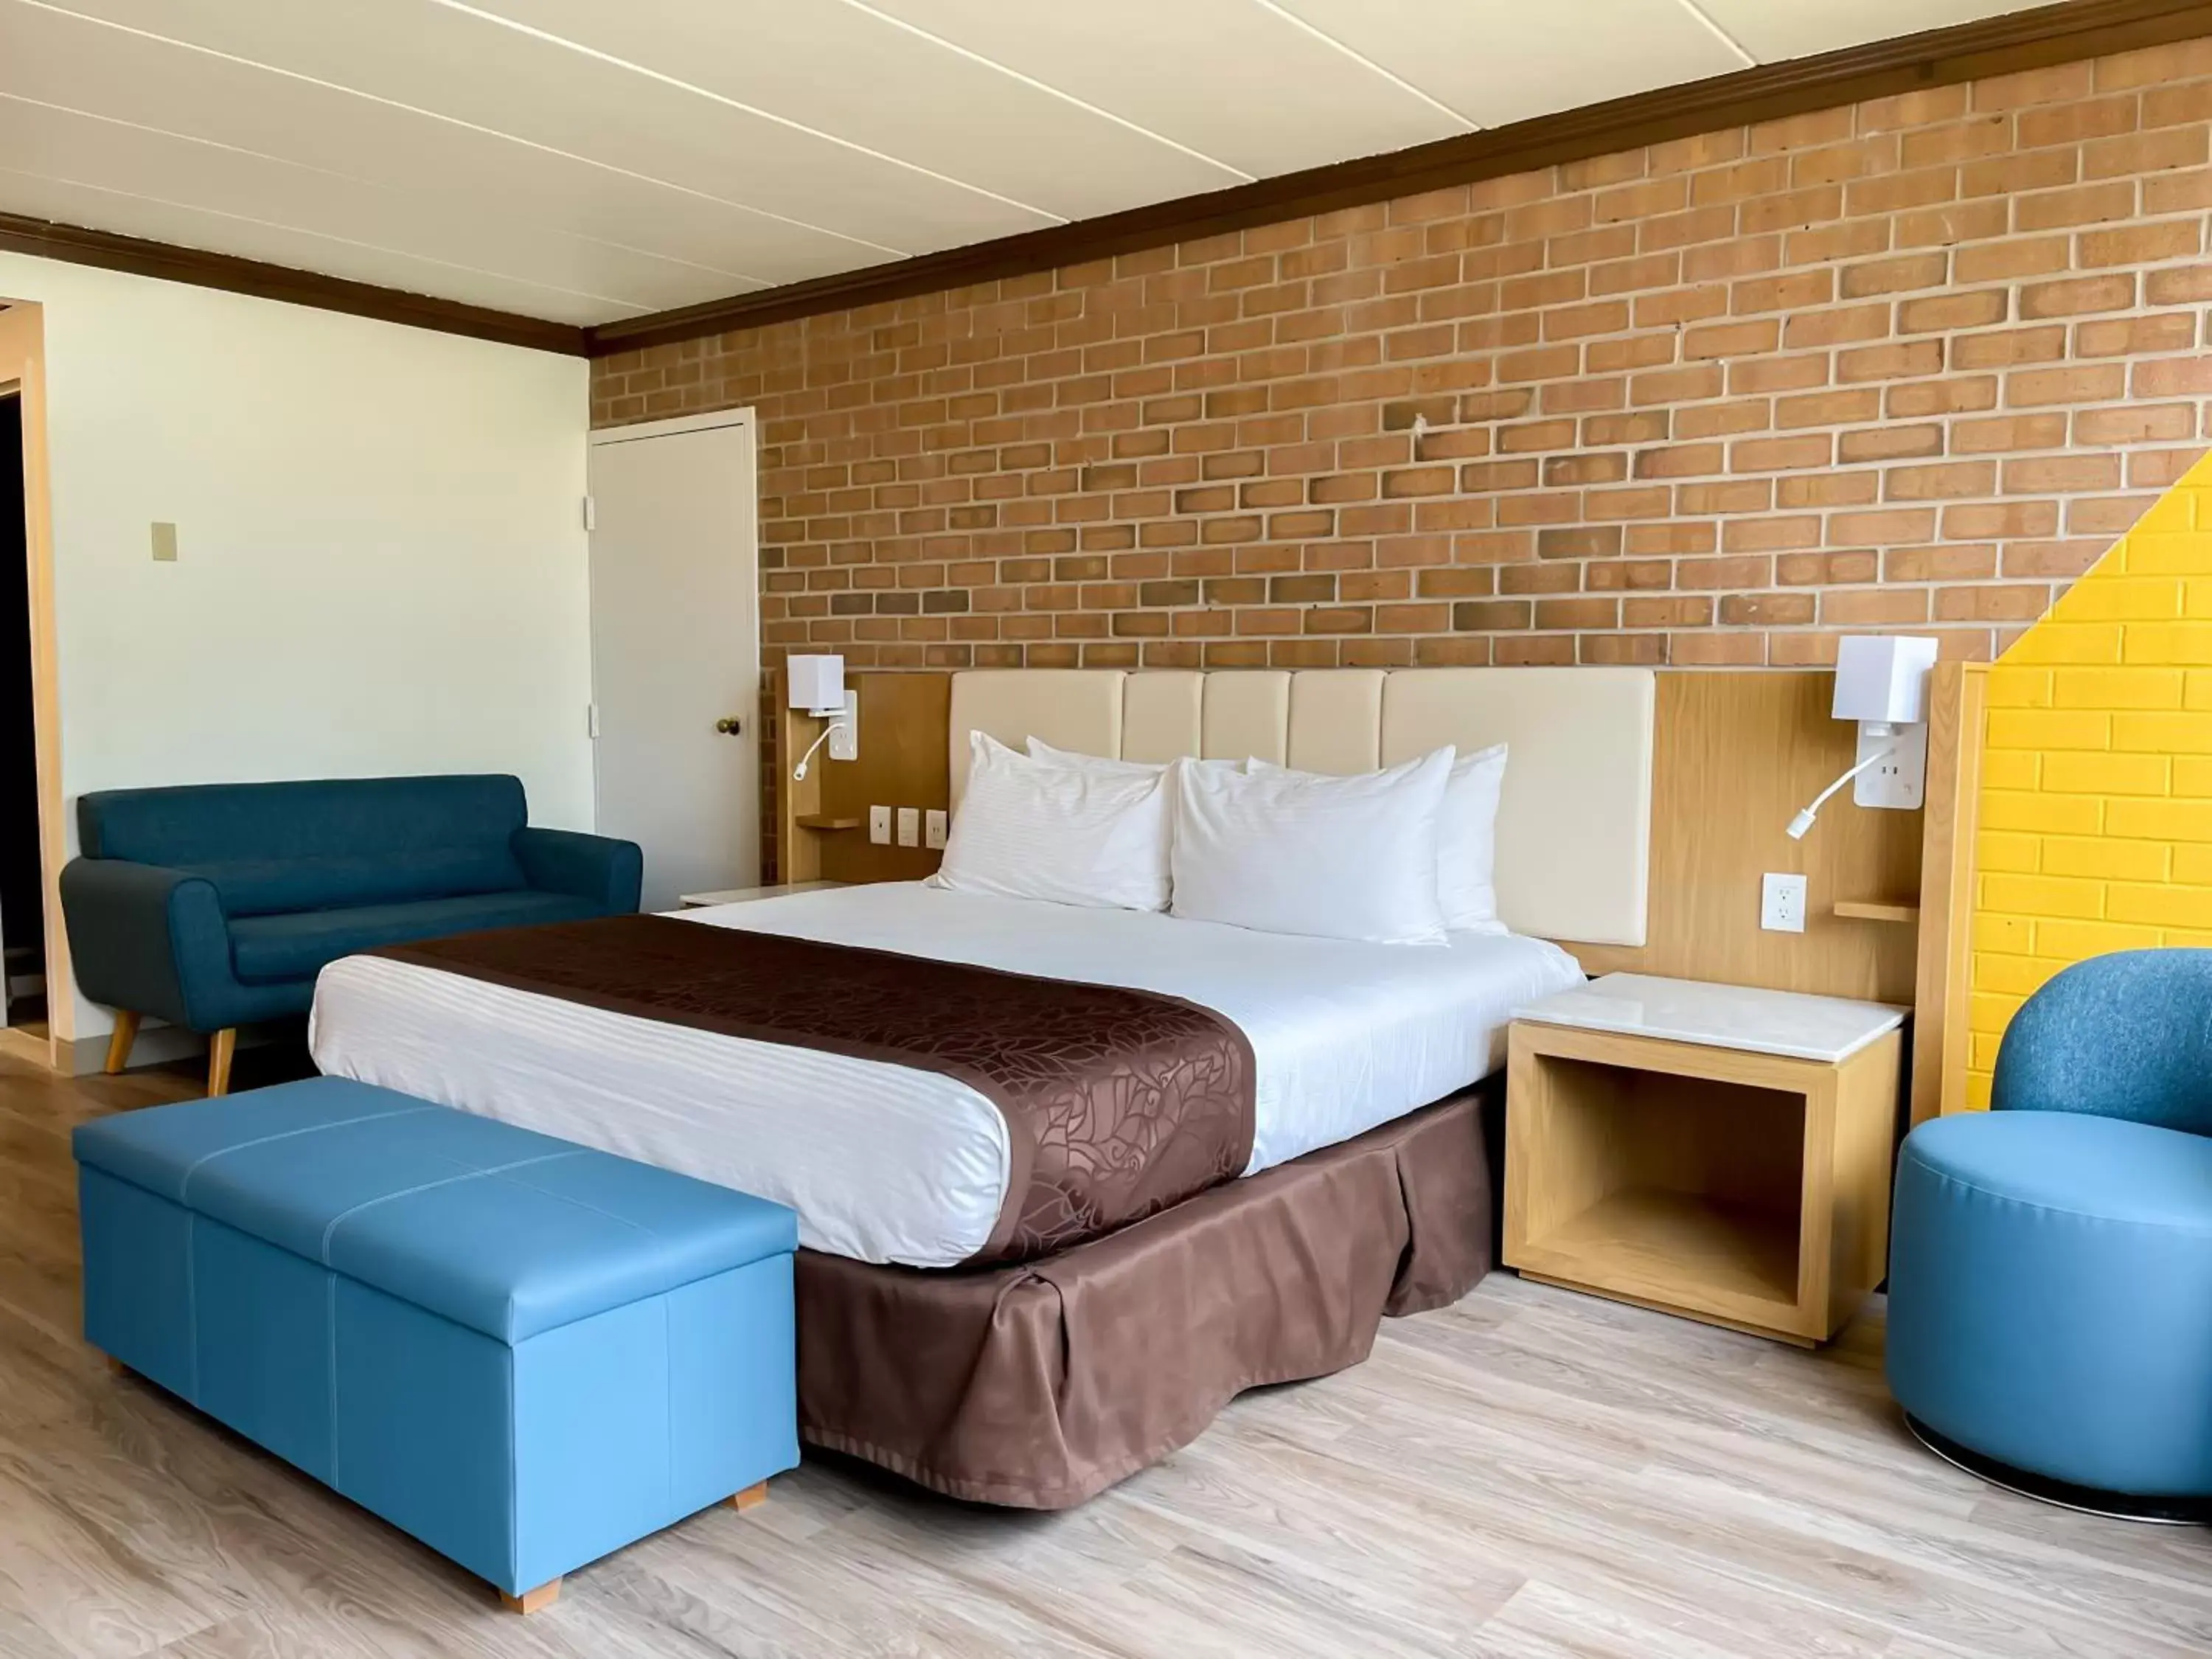 Bed in Split Rock Resort